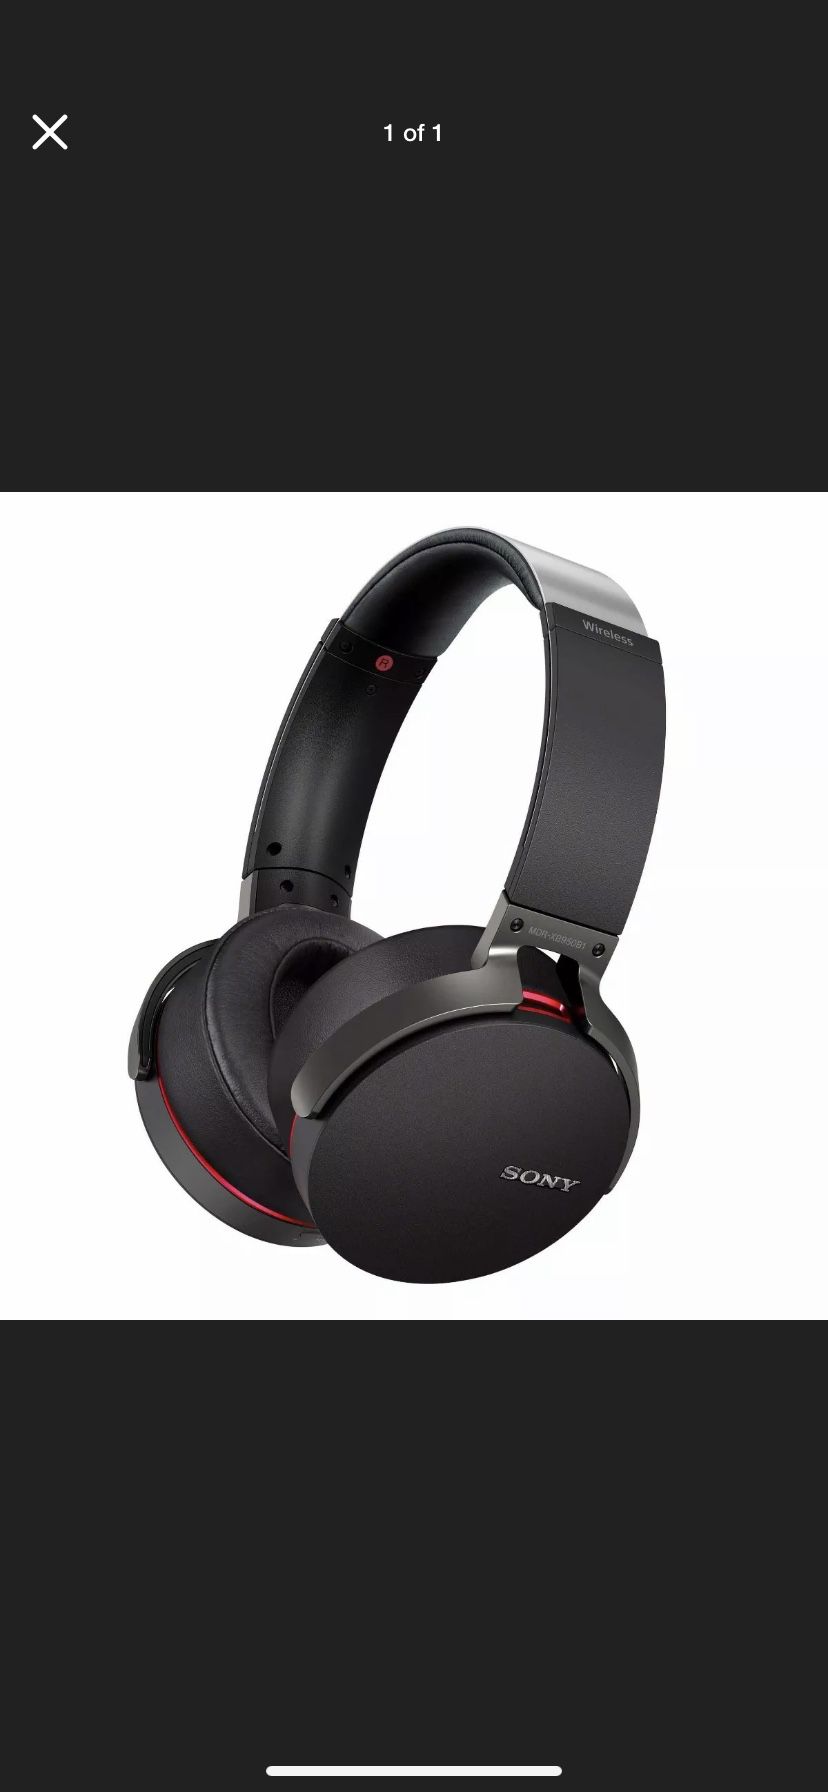 Brand new Sony headphones